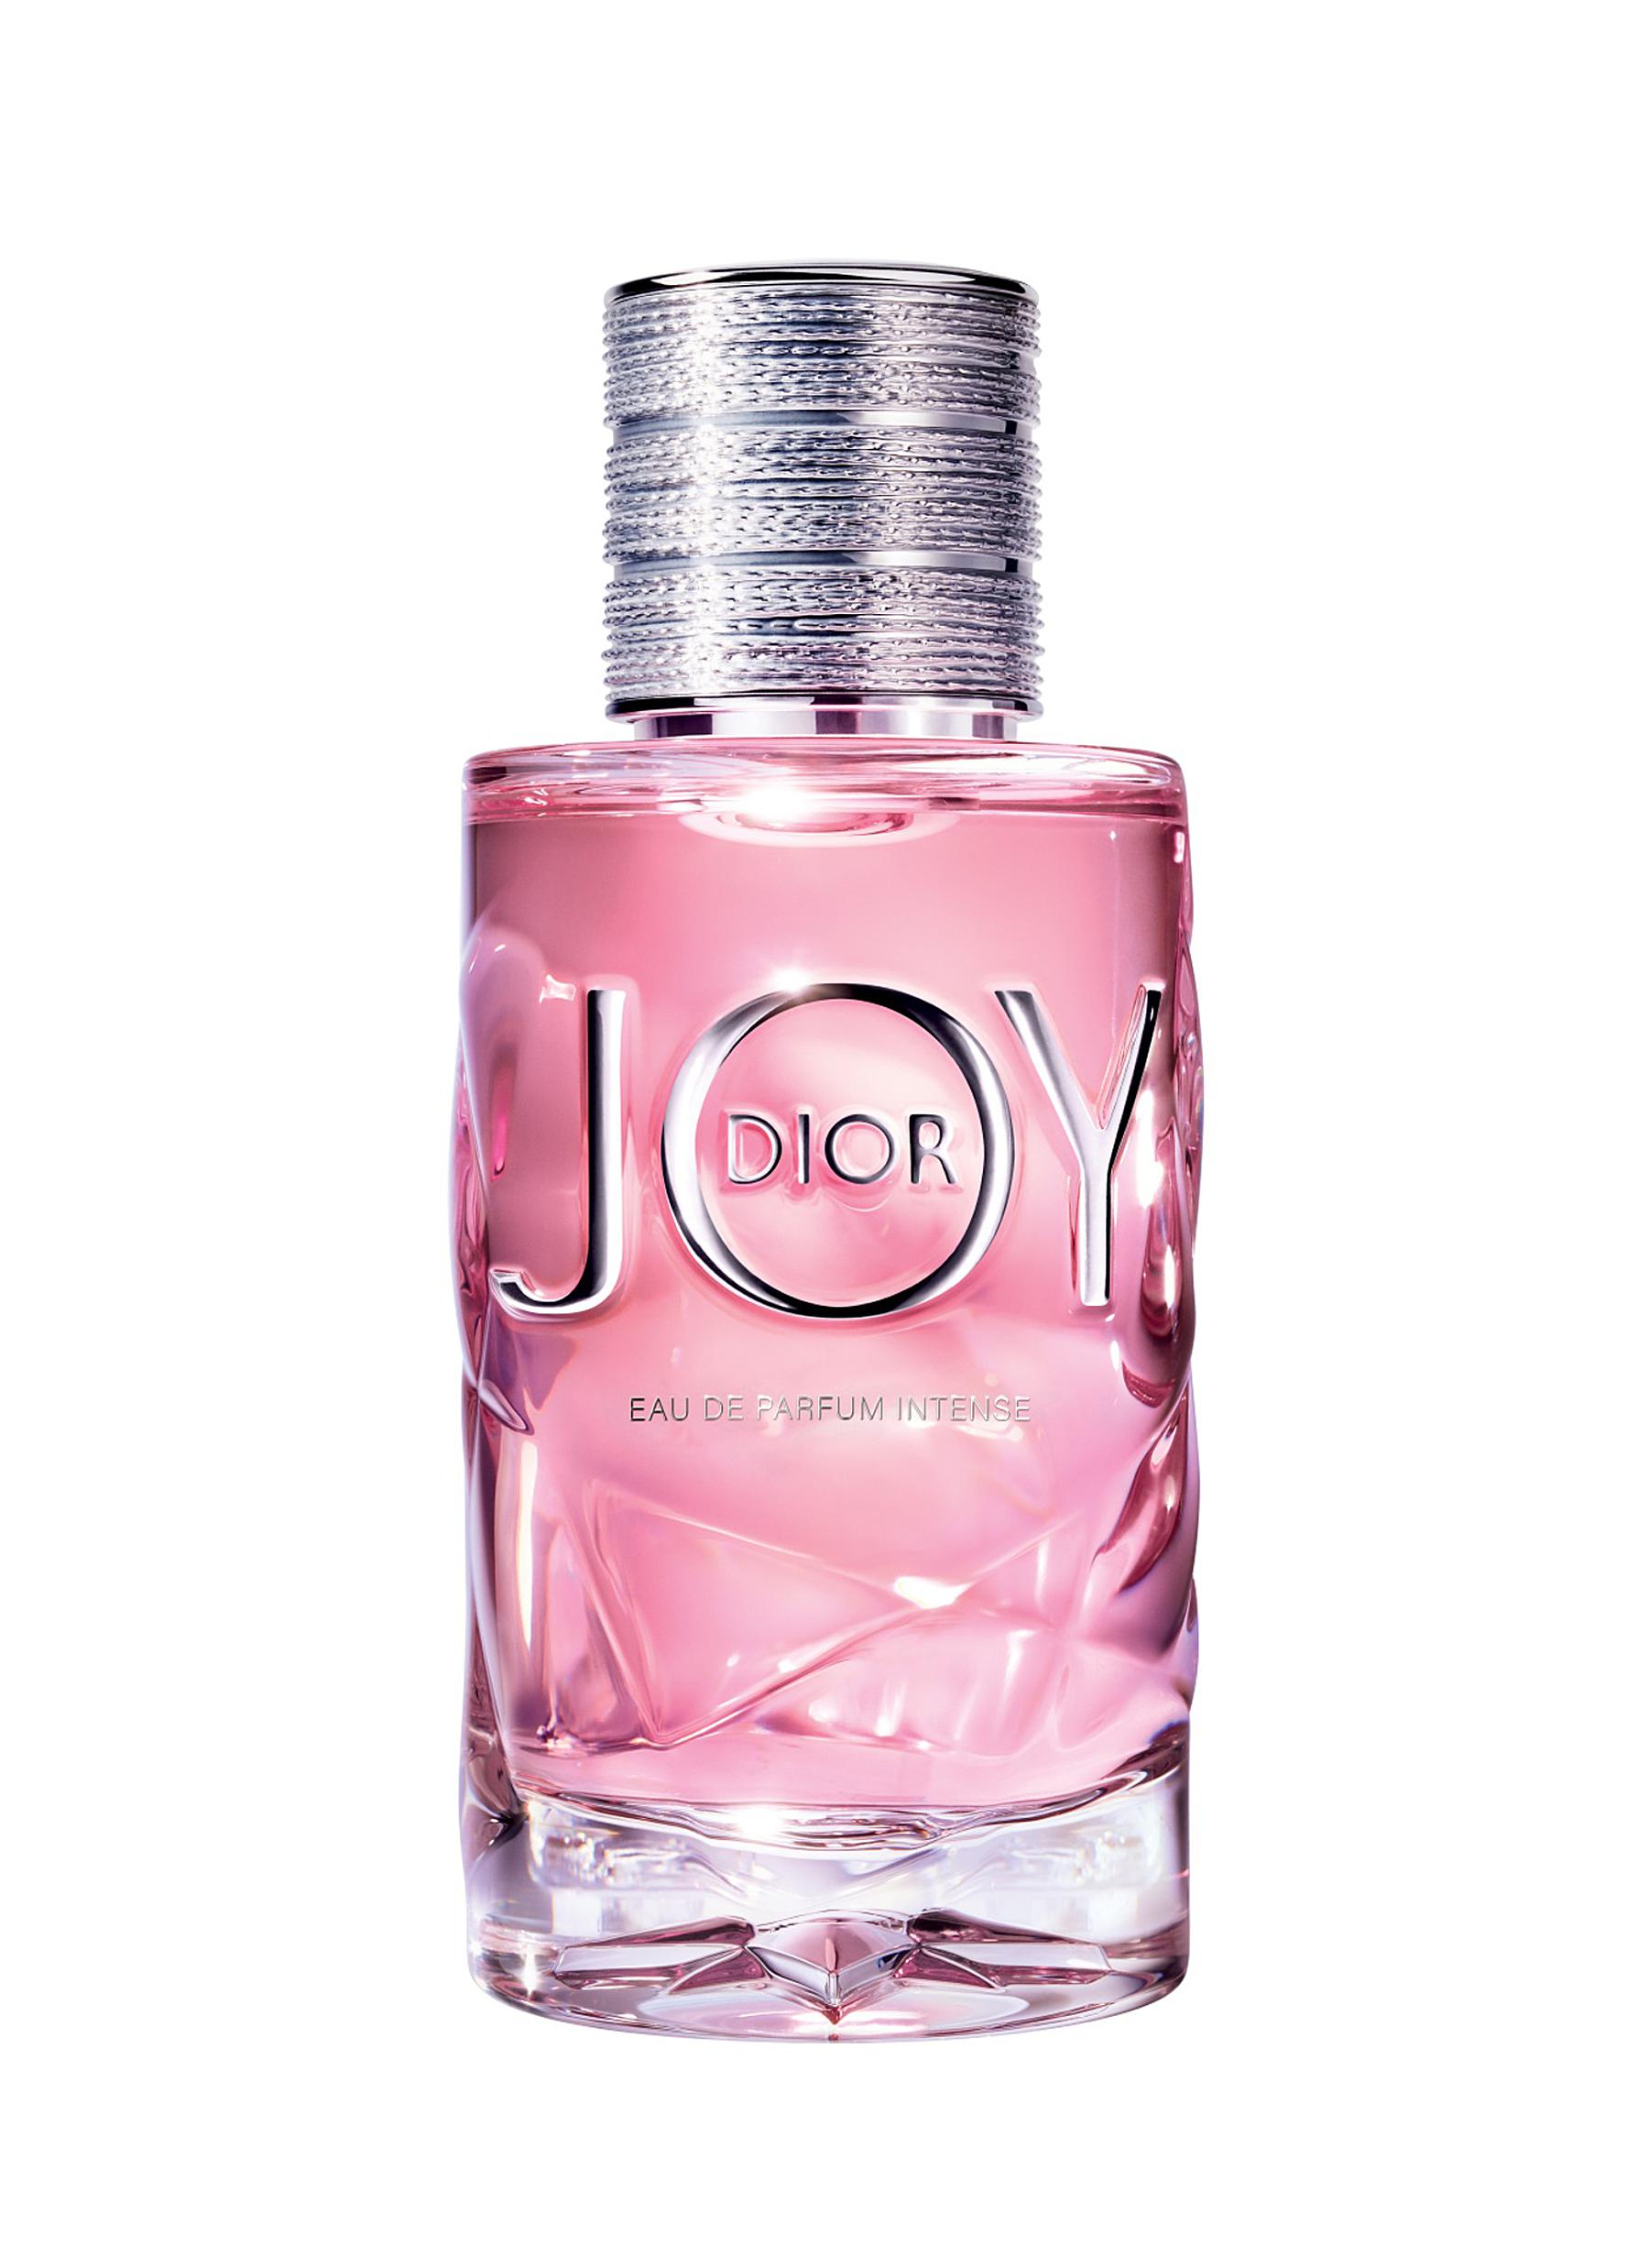 JOY by Dior Eau de Parfum Intense 50ml 